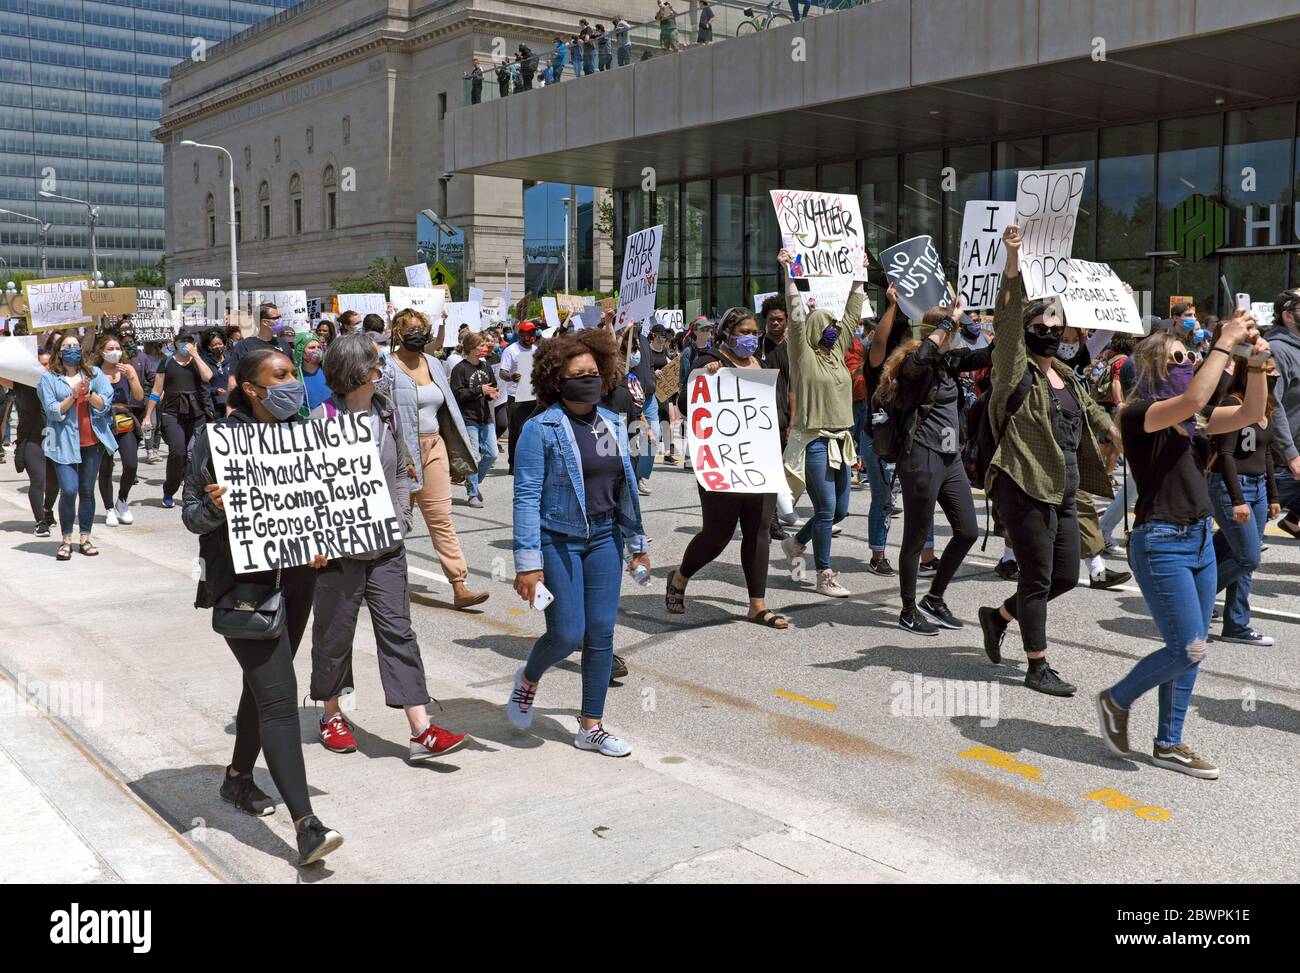 Black Lives Matter Demonstranten marschieren die Lakeside Avenue in der Innenstadt von Cleveland, Ohio, USA hinunter und stellen sich gegen die Ermordung schwarzer Menschen in den USA durch die Polizei. Der friedliche marsch verwandelte sich schließlich in das, was die Stadt als Aufruhr bezeichnete, was dazu führte, dass die Innenstadt für fast eine Woche gesperrt wurde. Stockfoto